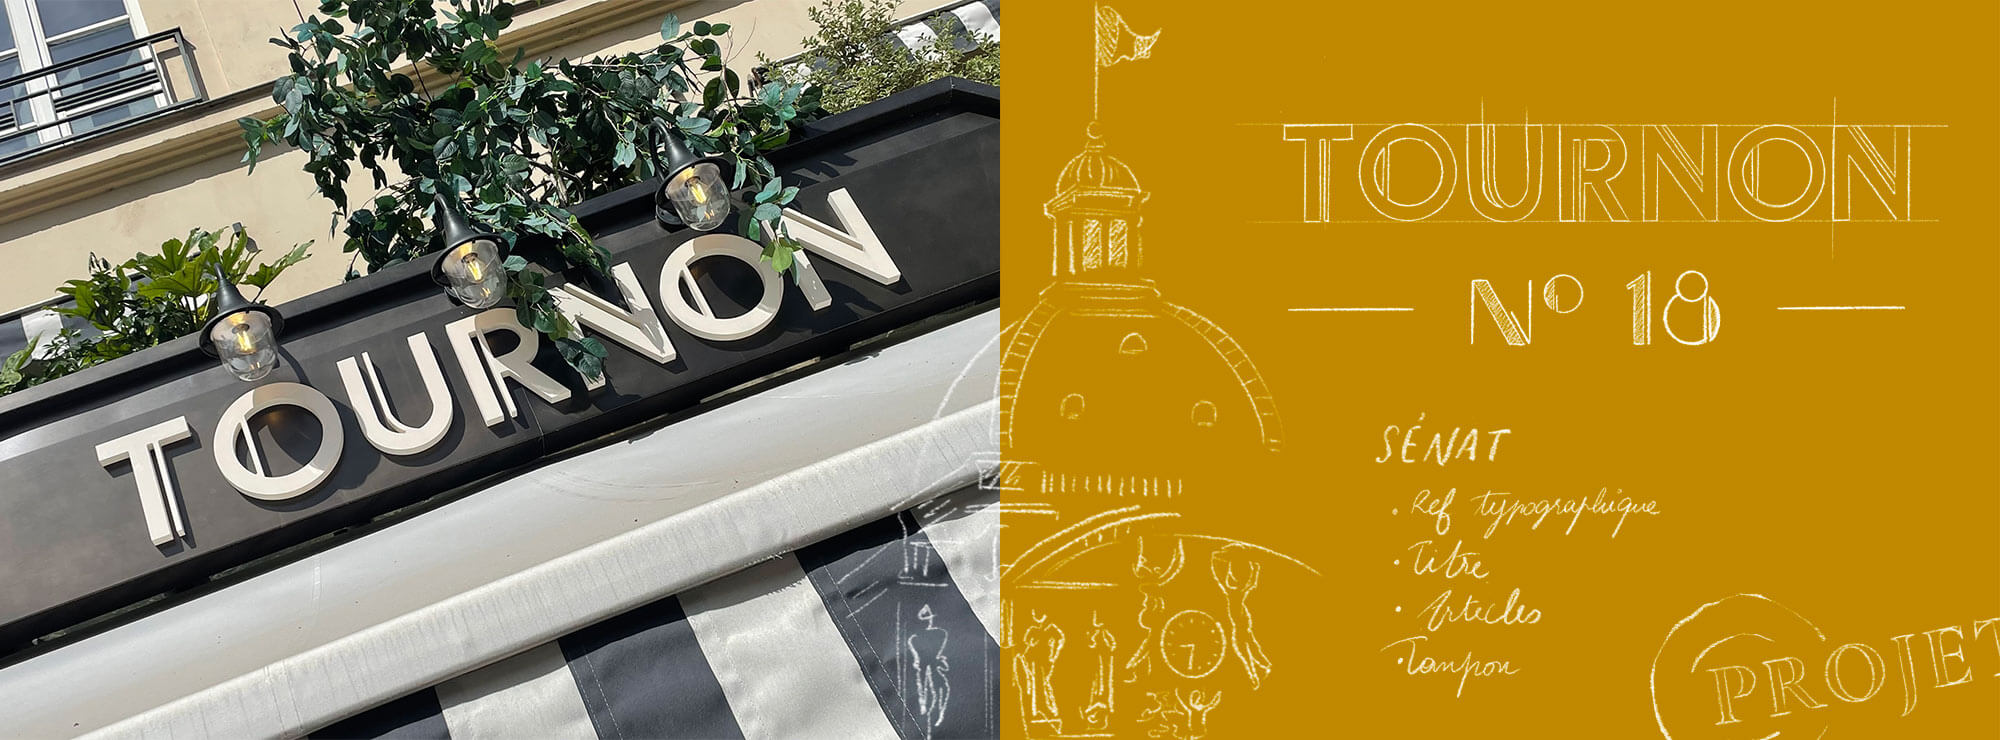 01 tournon visual identity logo restaurant senat illustration.jpg